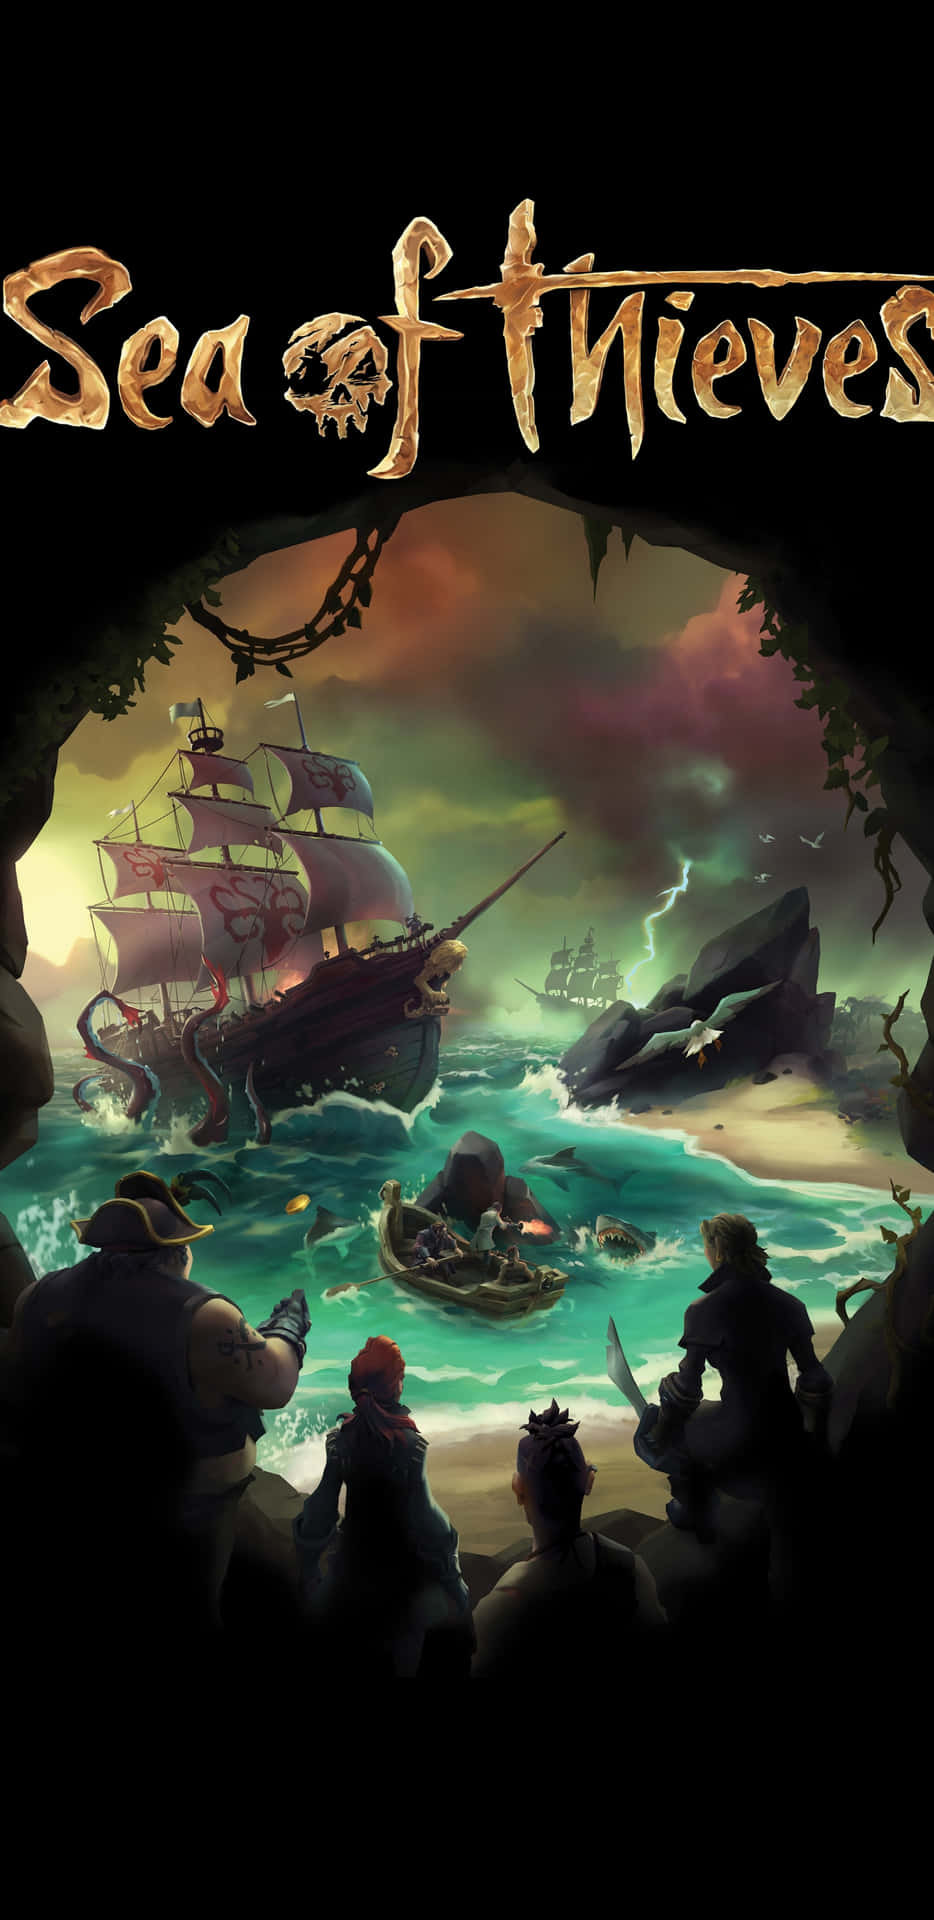 Erlebedas Ultimative Piratenabenteuer Mit Sea Of Thieves. Wallpaper